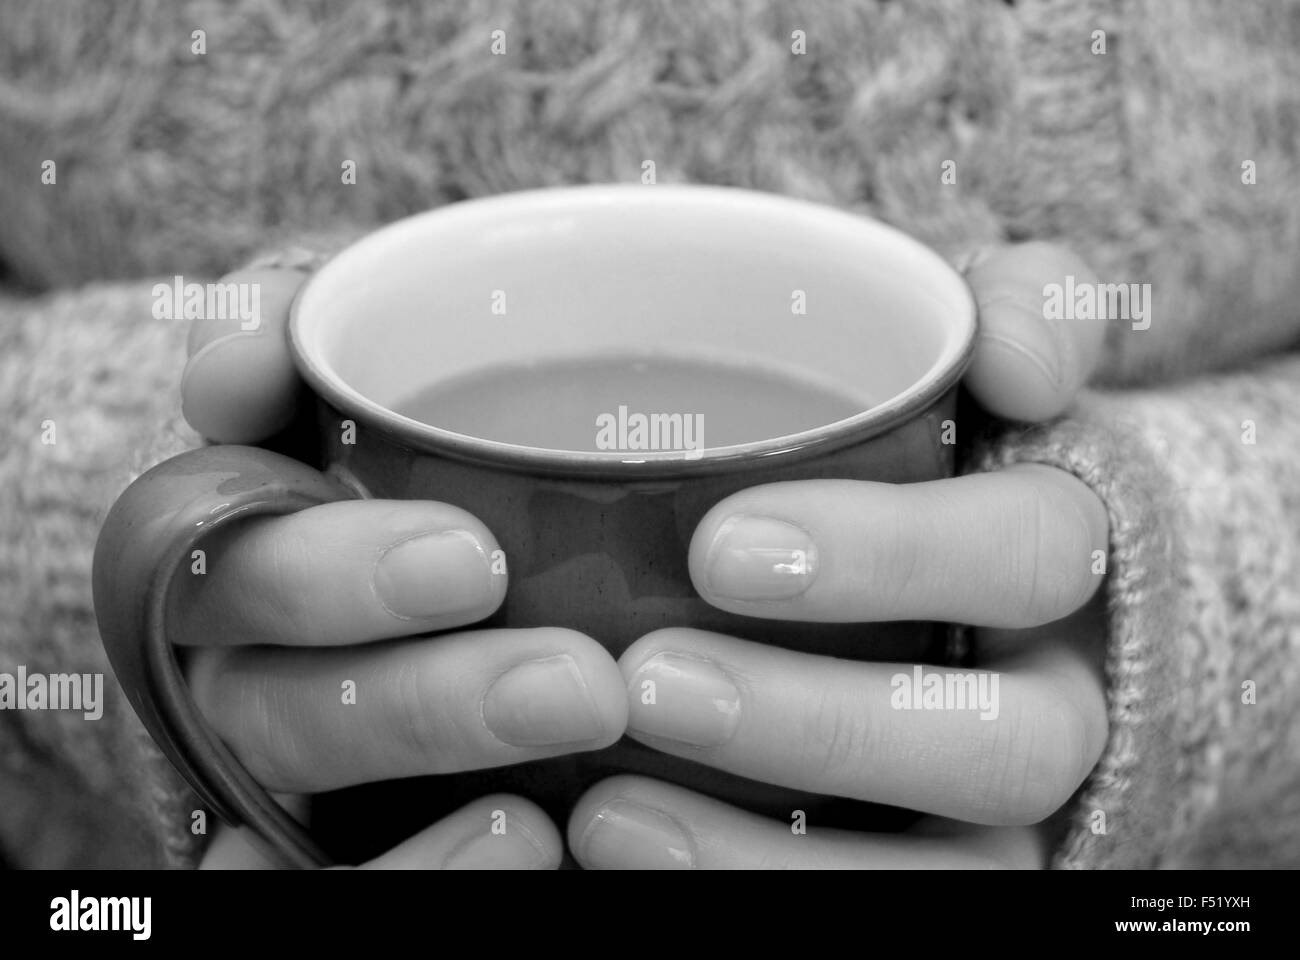 Zwei Hände halten warm, hält eine heiße Tasse Tee oder Kaffee - monochrome Verarbeitung Stockfoto